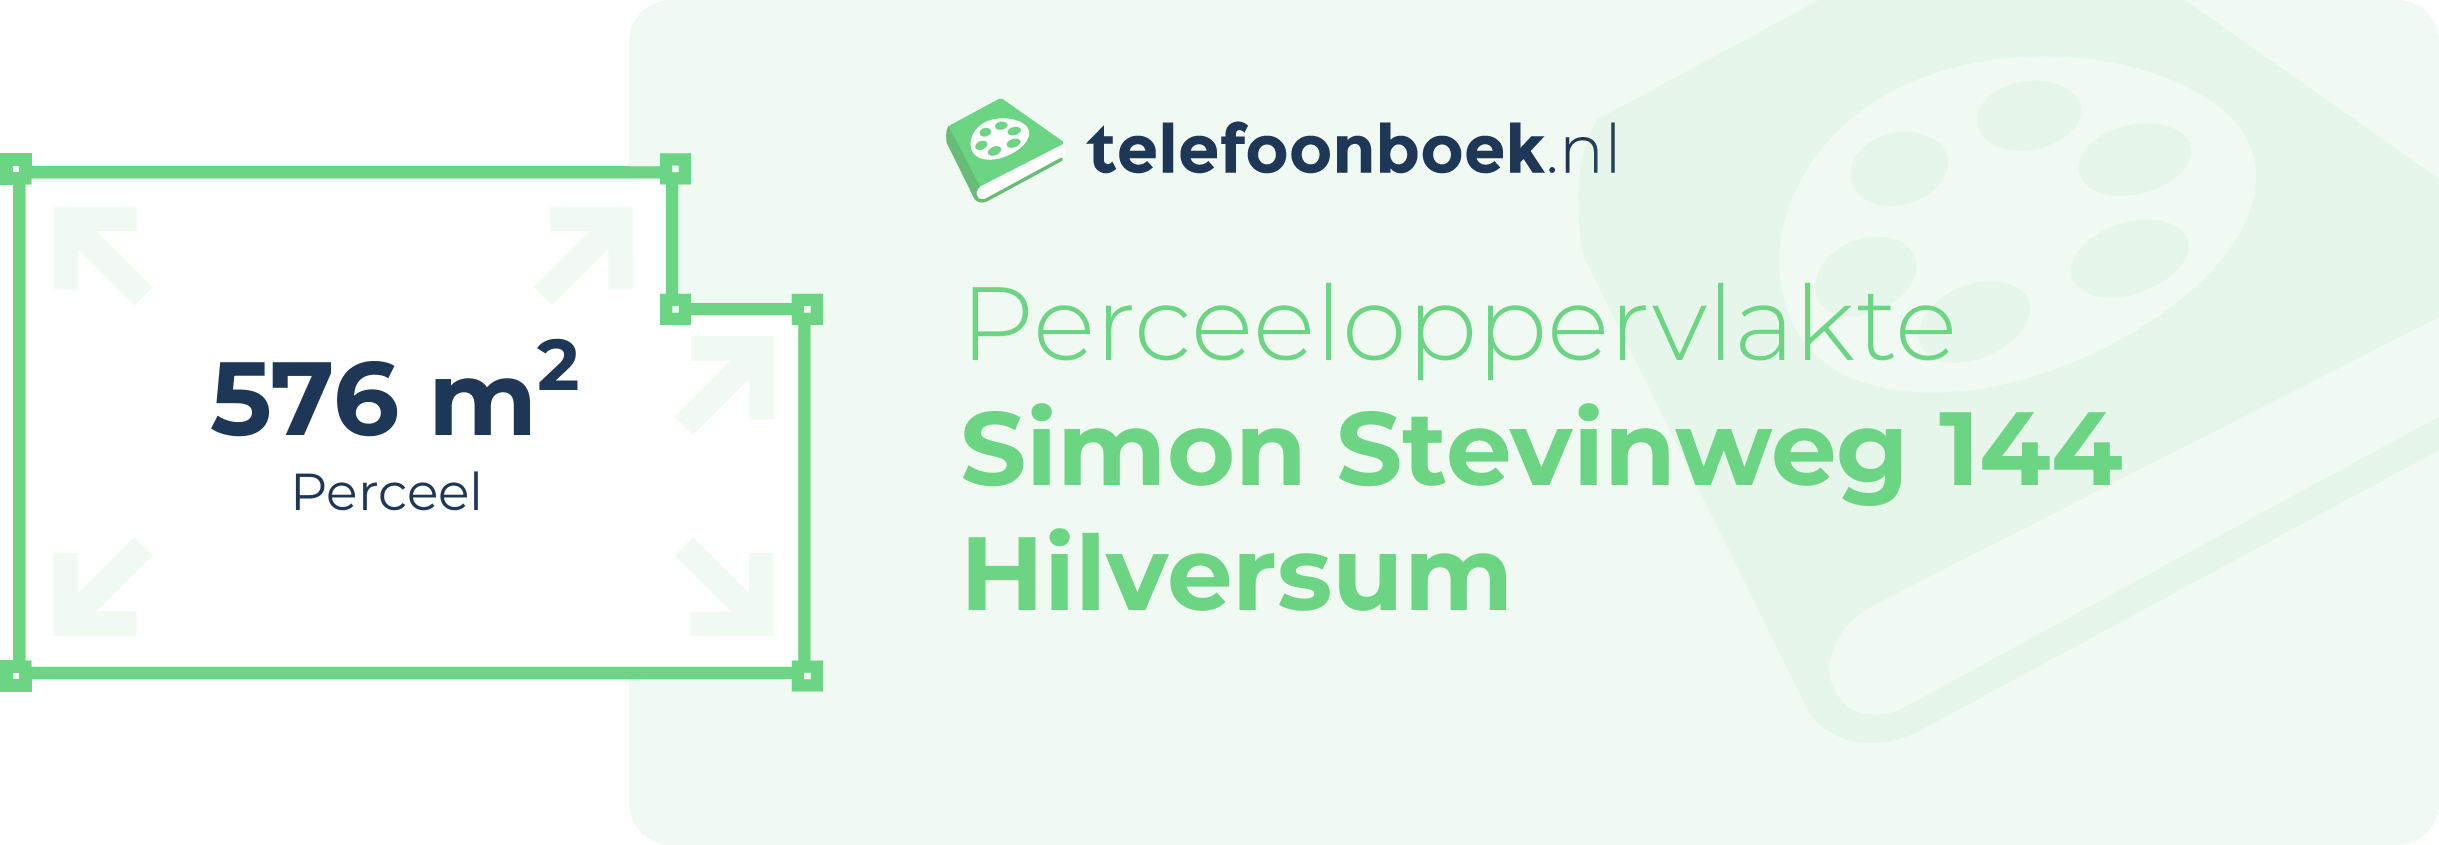 Perceeloppervlakte Simon Stevinweg 144 Hilversum